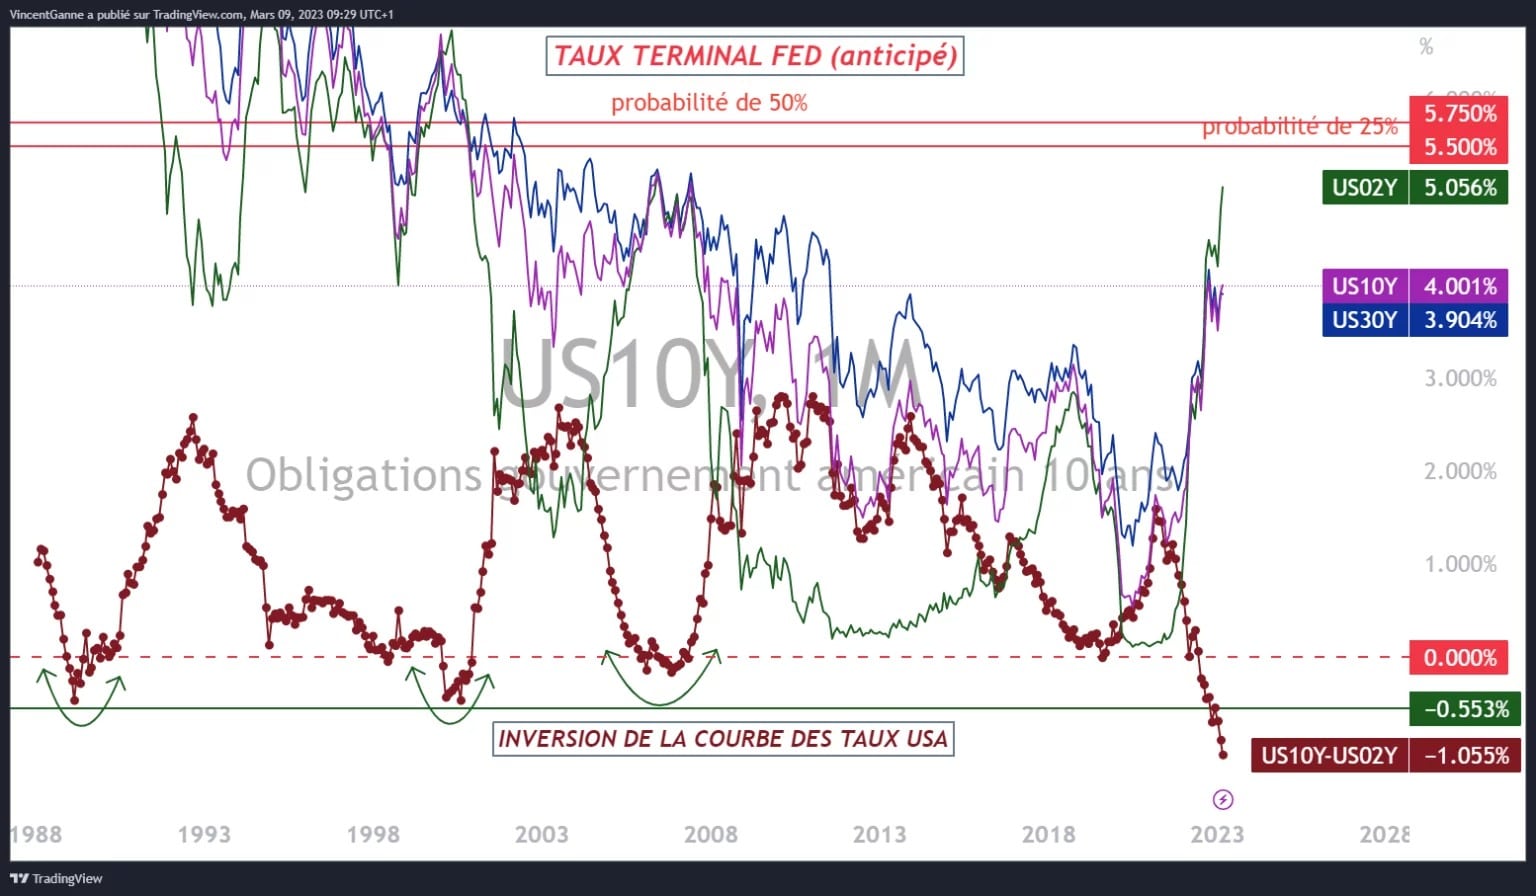 Chart, der die folgenden Informationen enthüllt: die Anleihezinsen in den USA, den erwarteten Terminalsatz der US-Notenbank (FED) und die Inversion der US-Zinskurve.